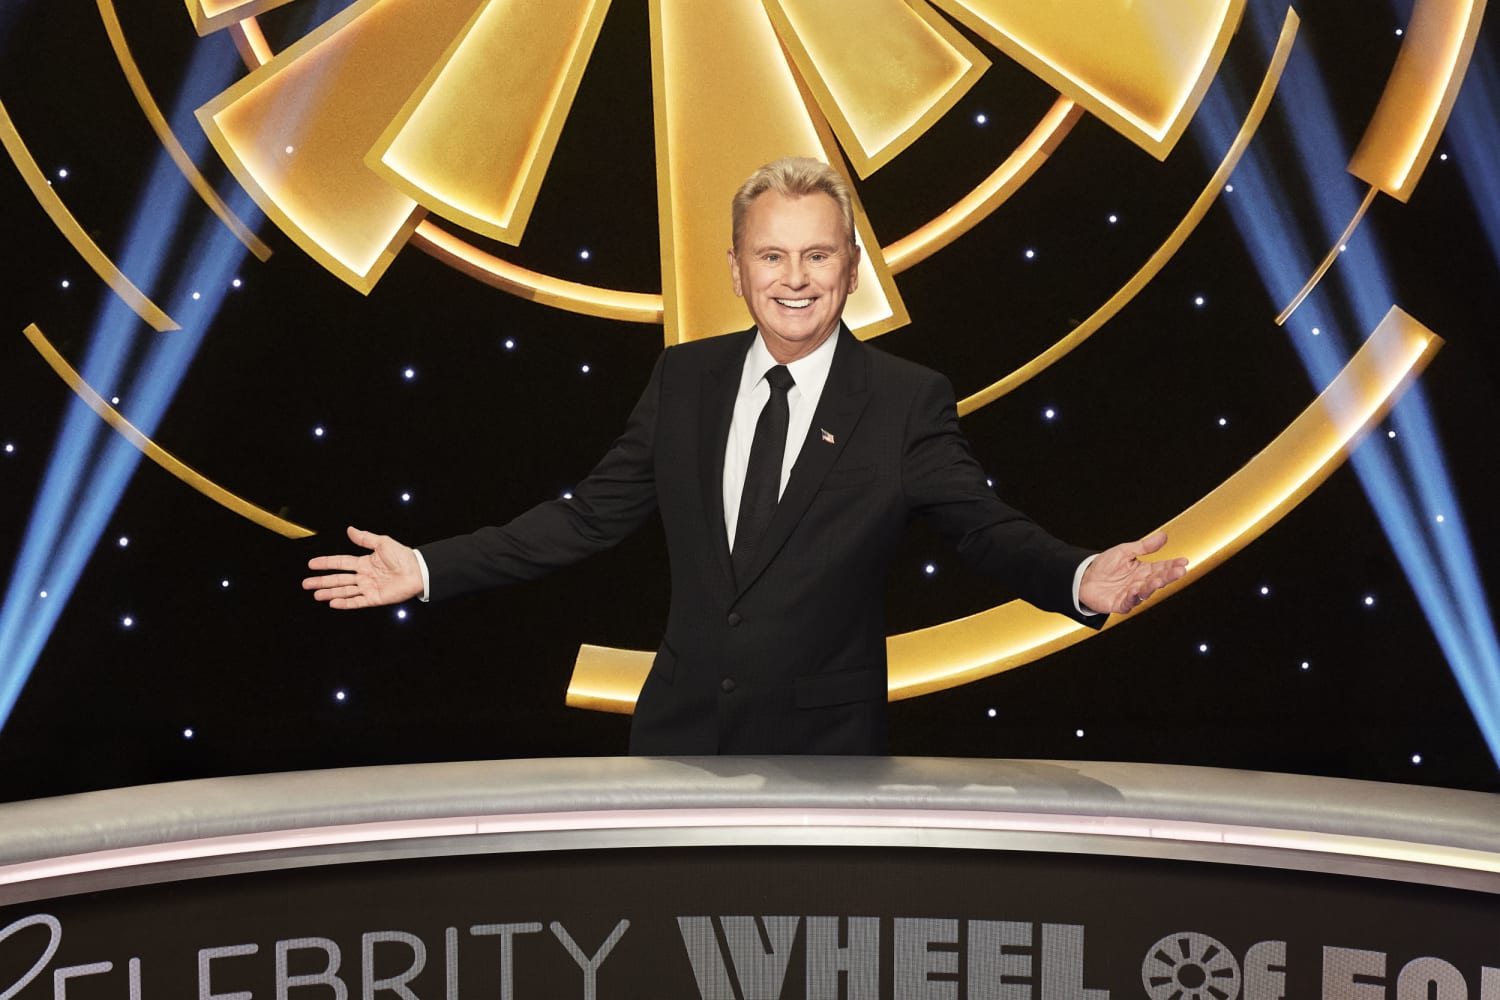 Pat Sajak fa la sua ultima corsa come presentatore di “Wheel of Fortune” dopo 41 anni